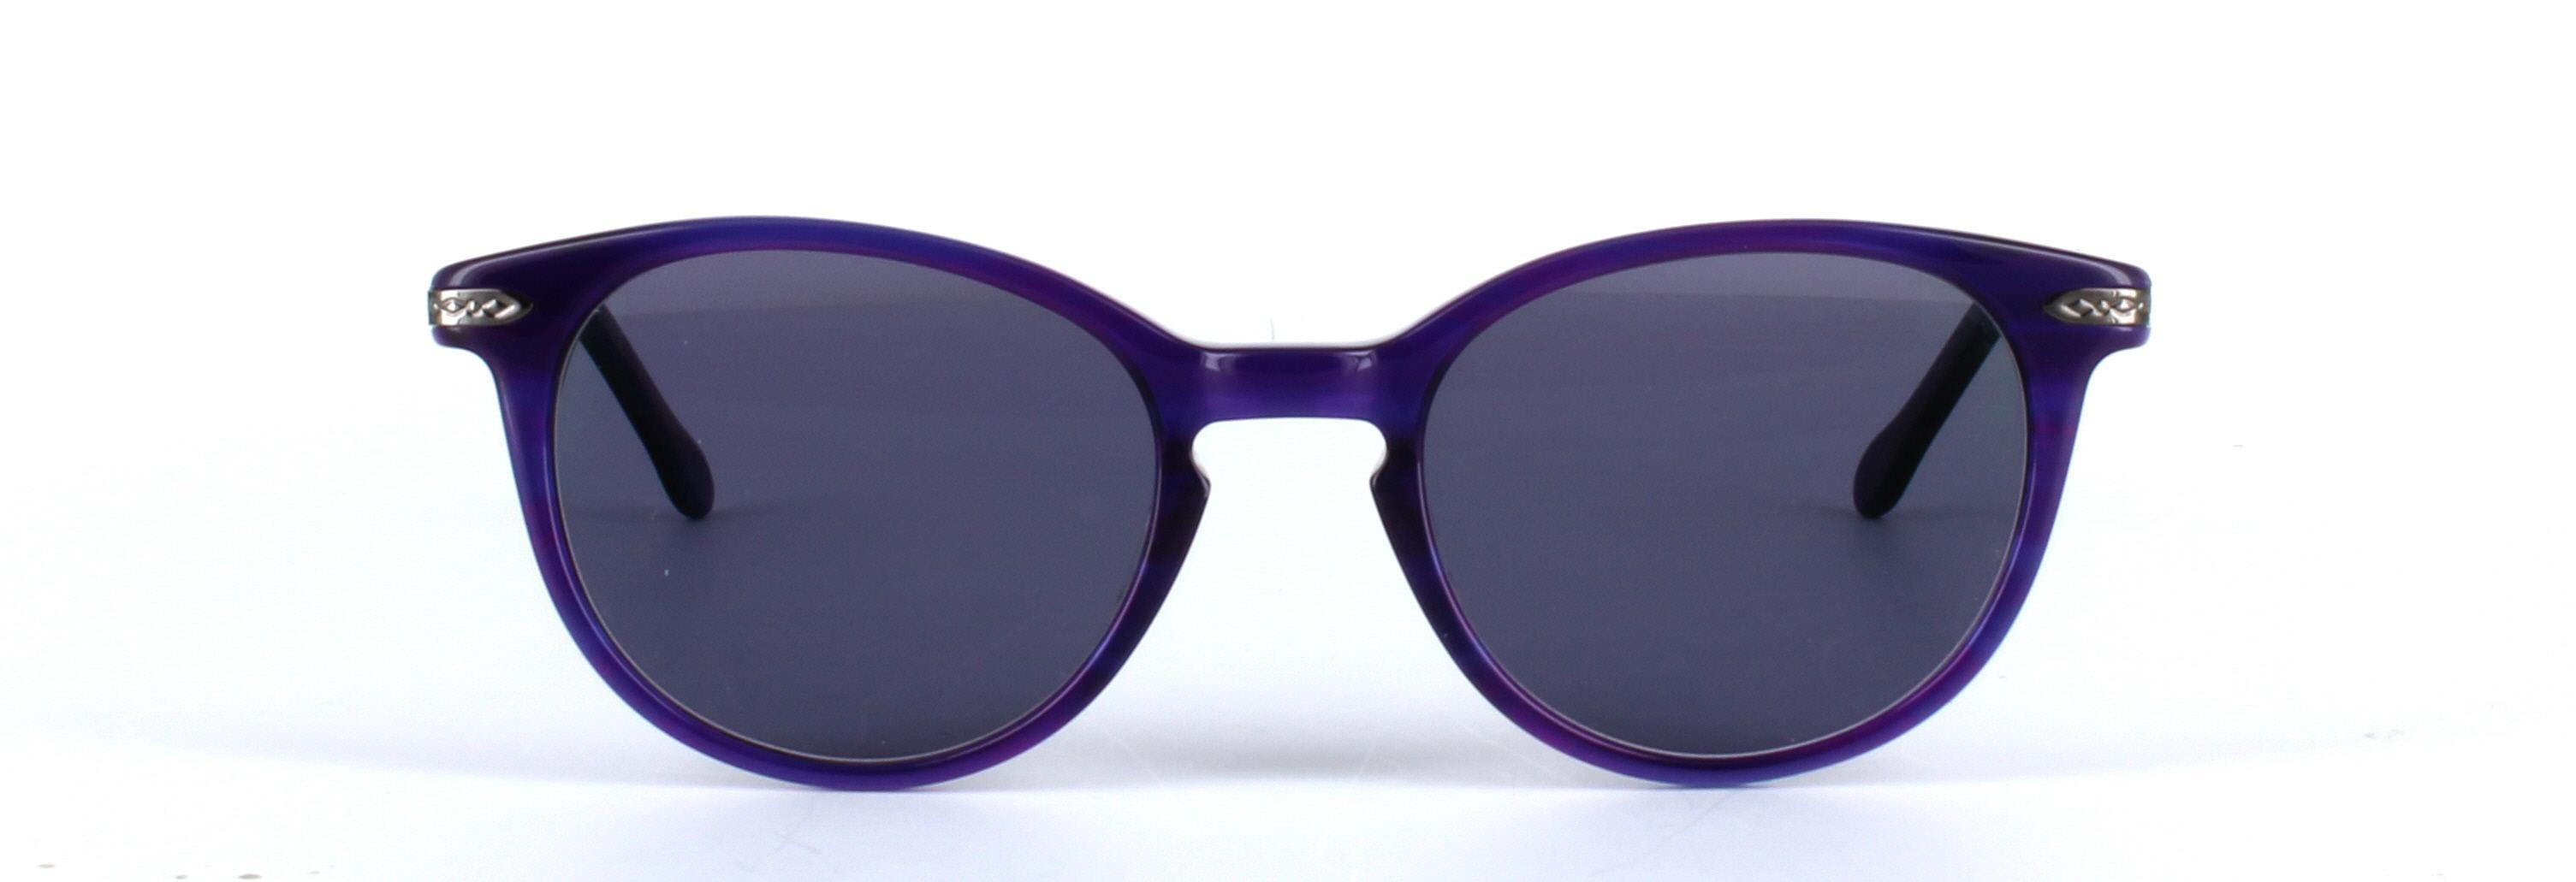 Amanda Purple Full Rim Round Acetate Sunglasses - Image View 5